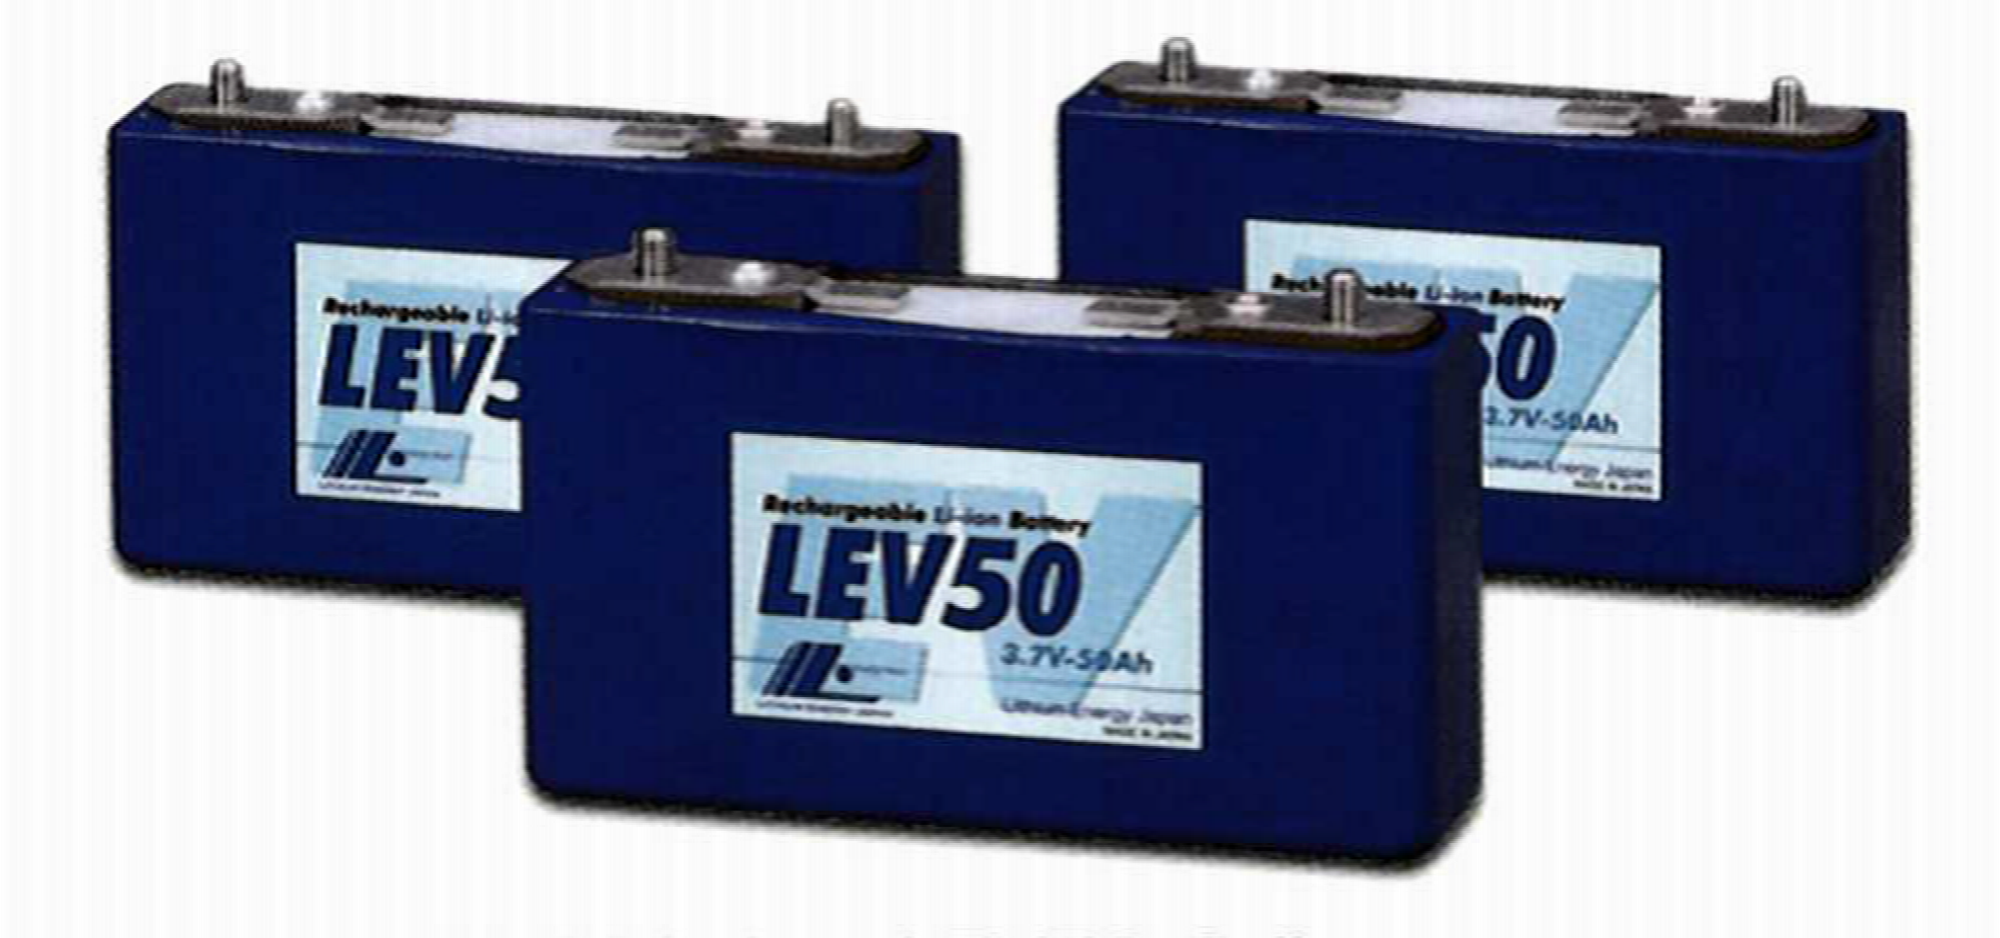 LEJ社製 Li-ion電池 LEV50